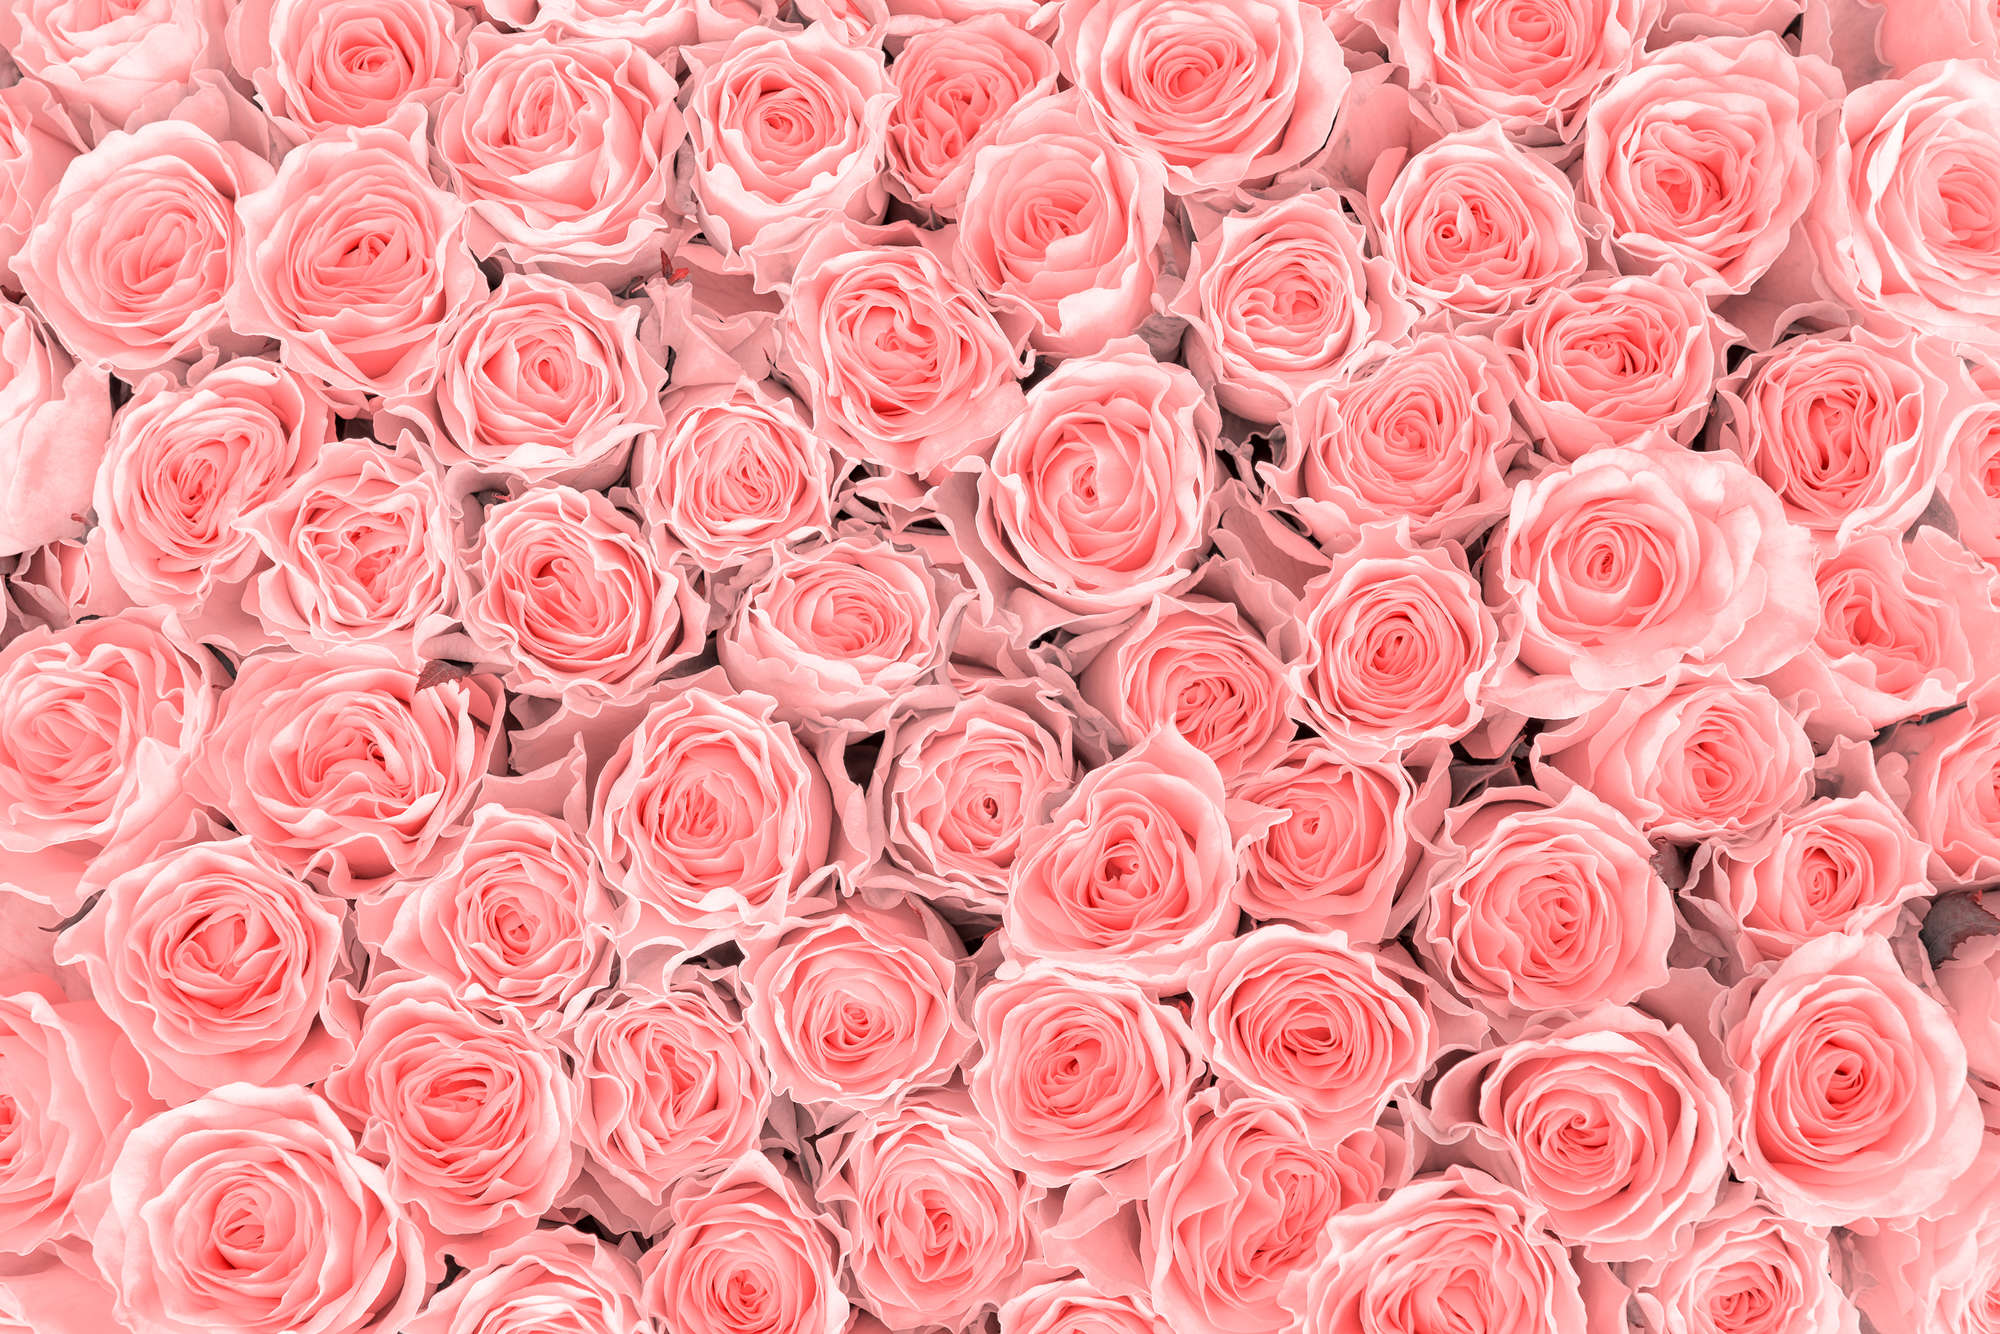             Papier peint végétal roses roses sur intissé structuré
        